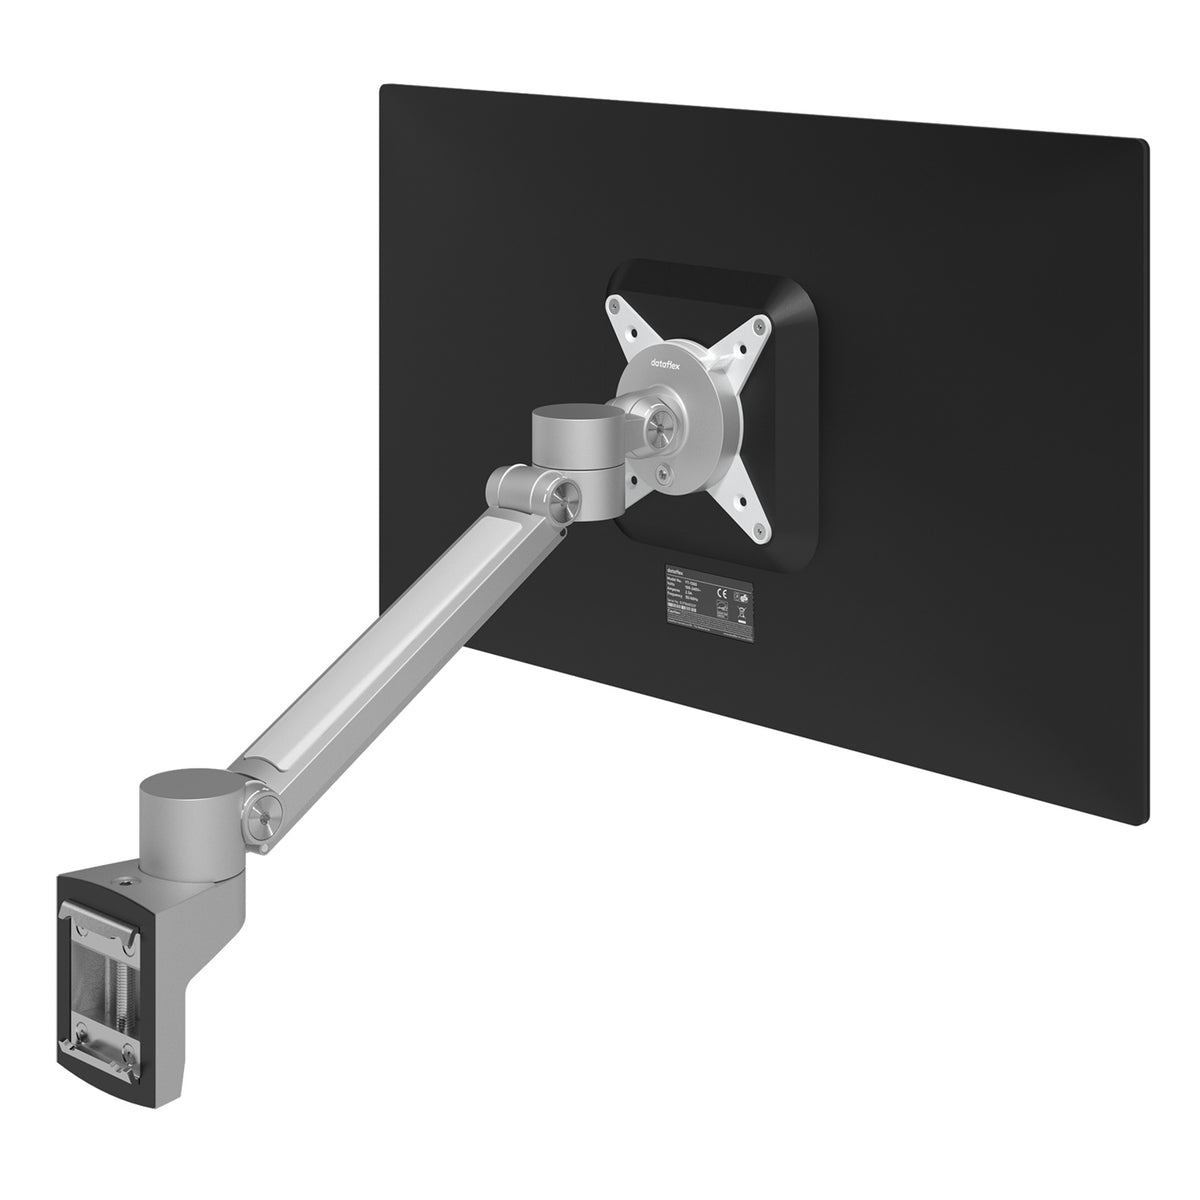 Viewlite plus monitor arm - rail 512